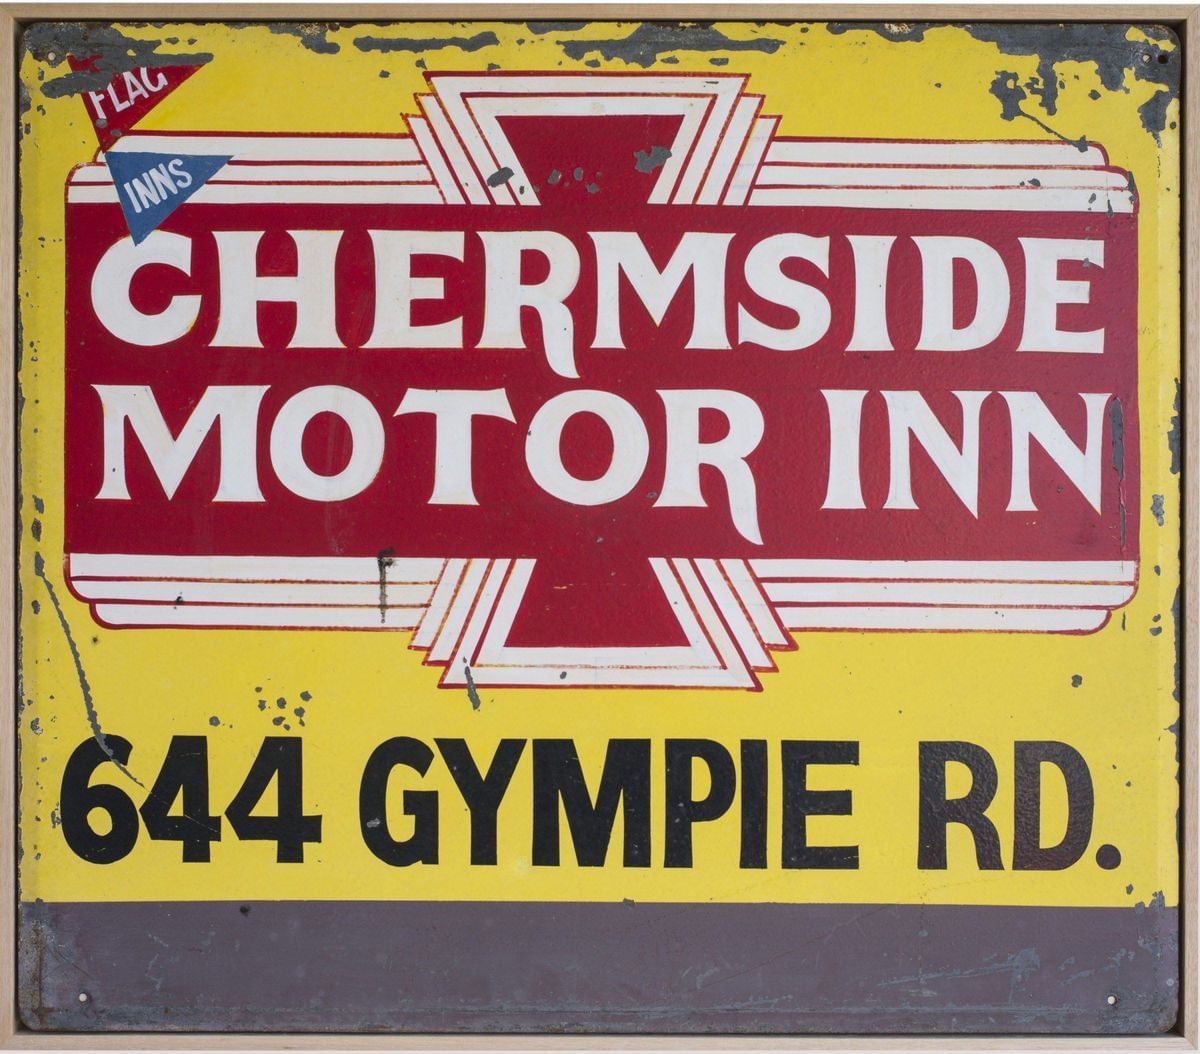 Motor Mouth - Chermside Motor Inn